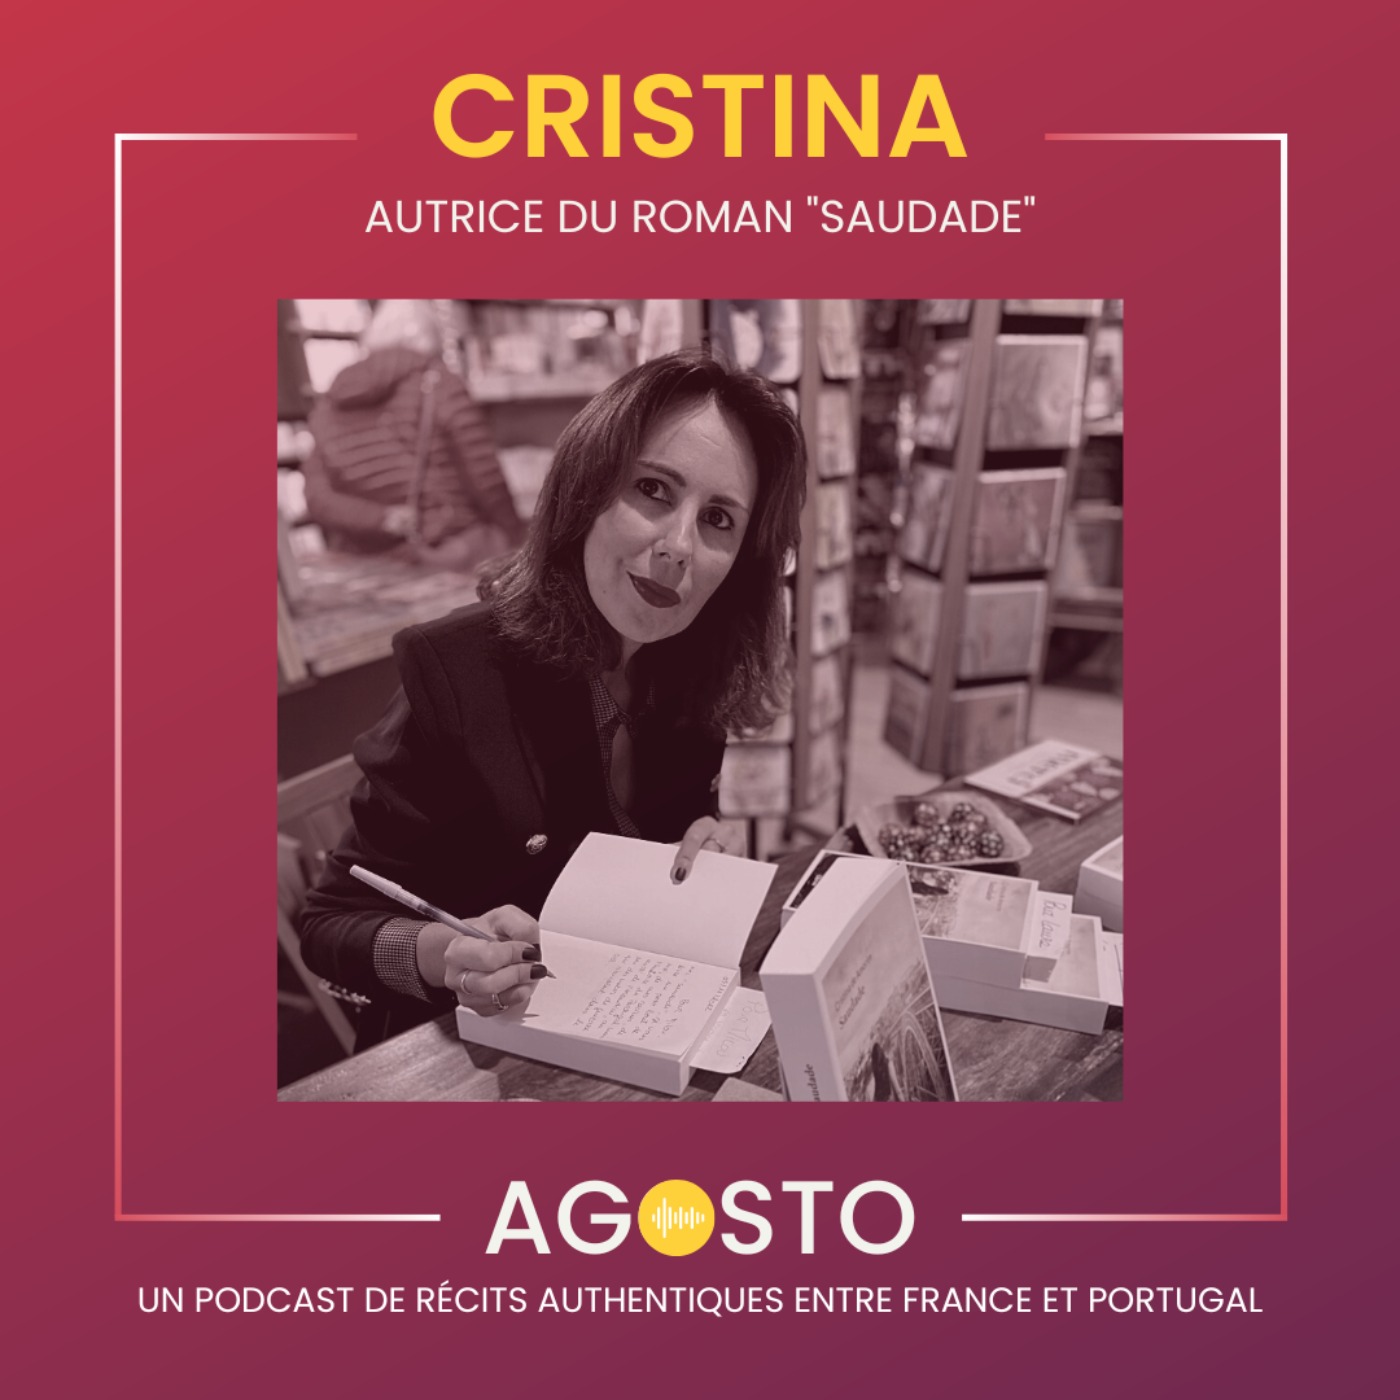 Cristina, autrice du roman "Saudade"